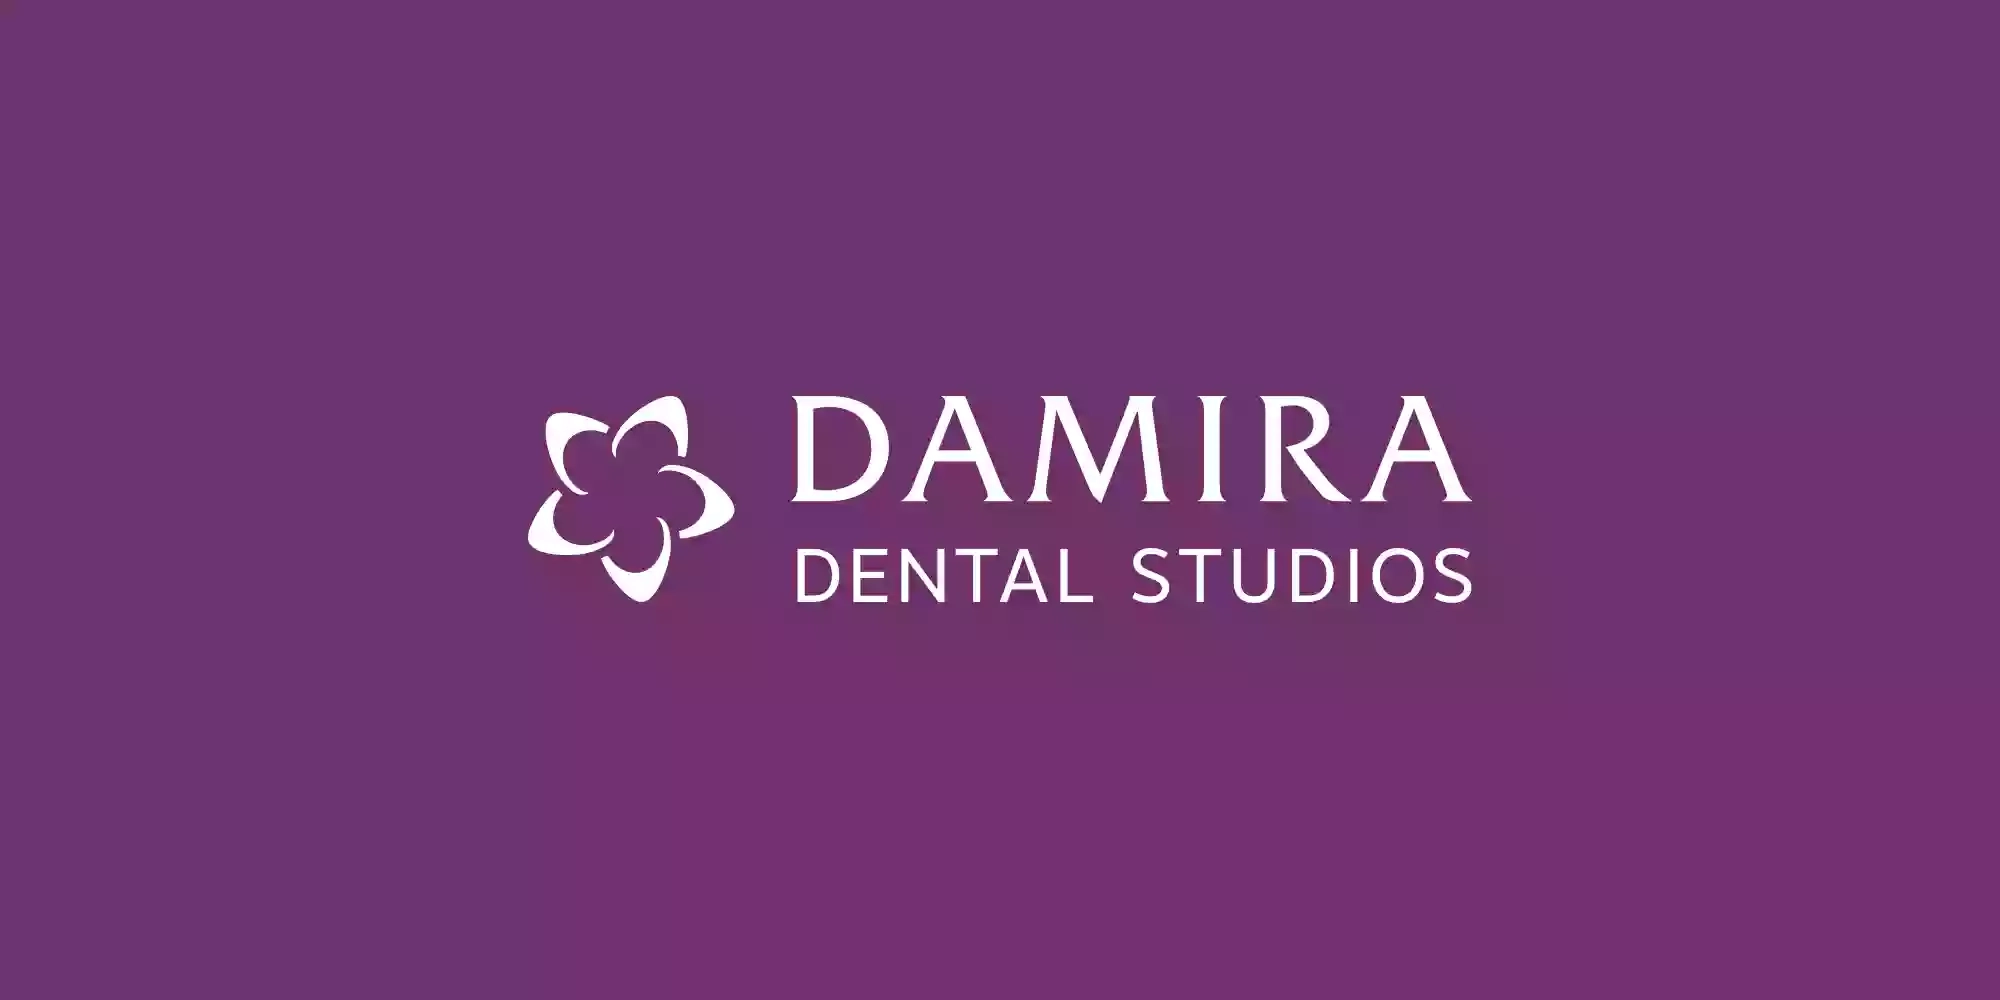 Damira Bridge Street Dental Practice